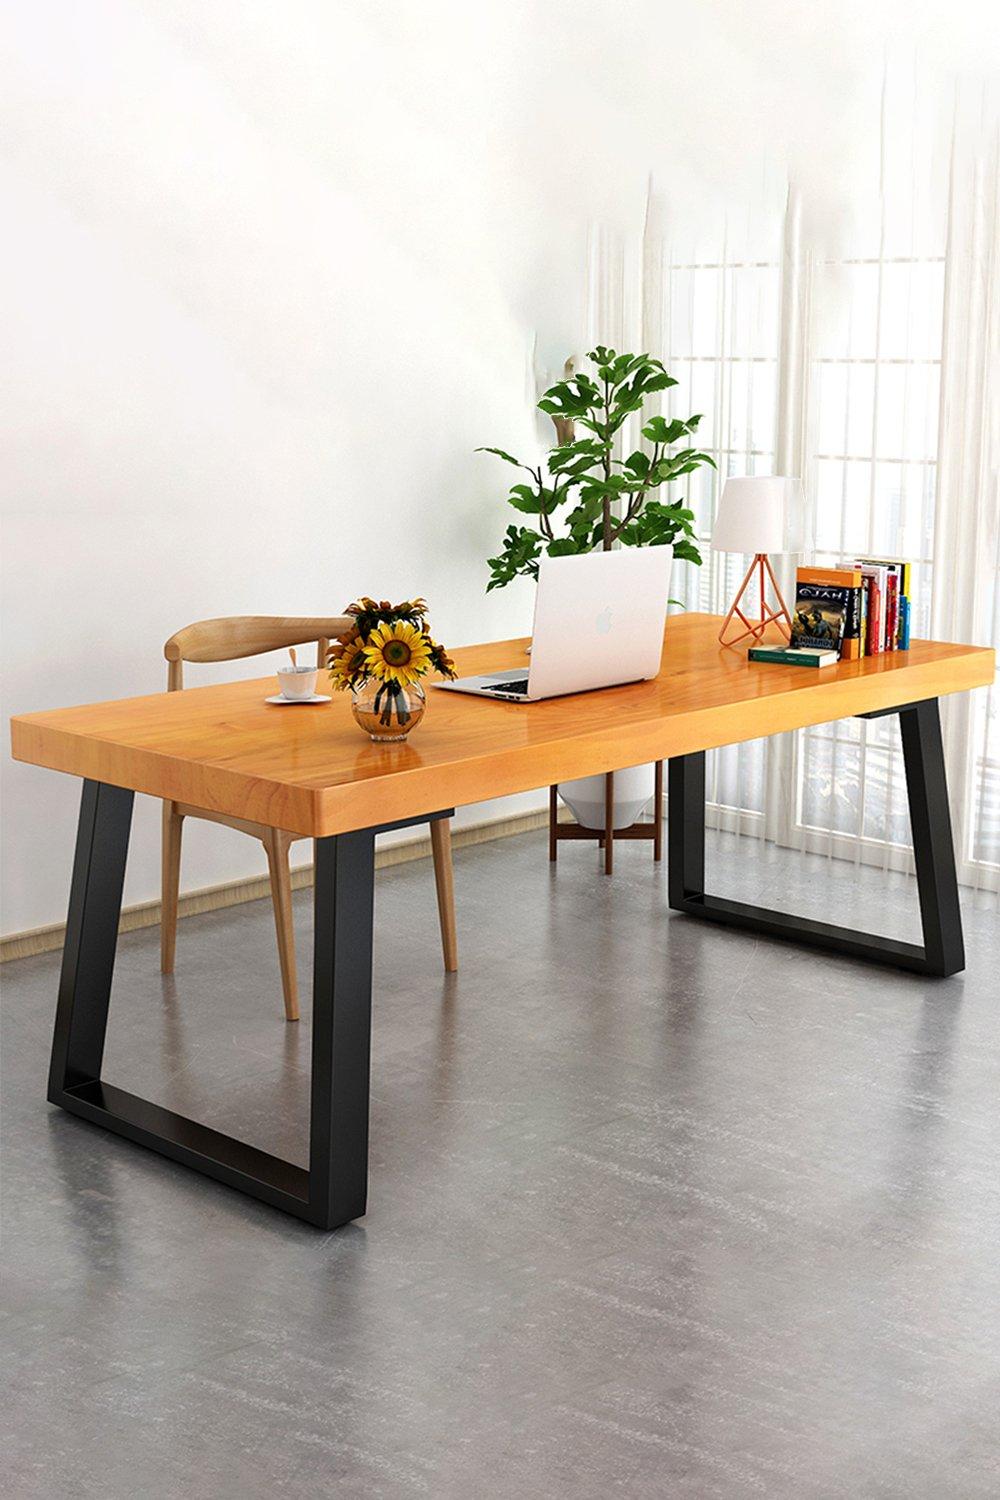 65x7x71cm Industrial Set of 2 Table Legs DIY Steel Furniture Legs